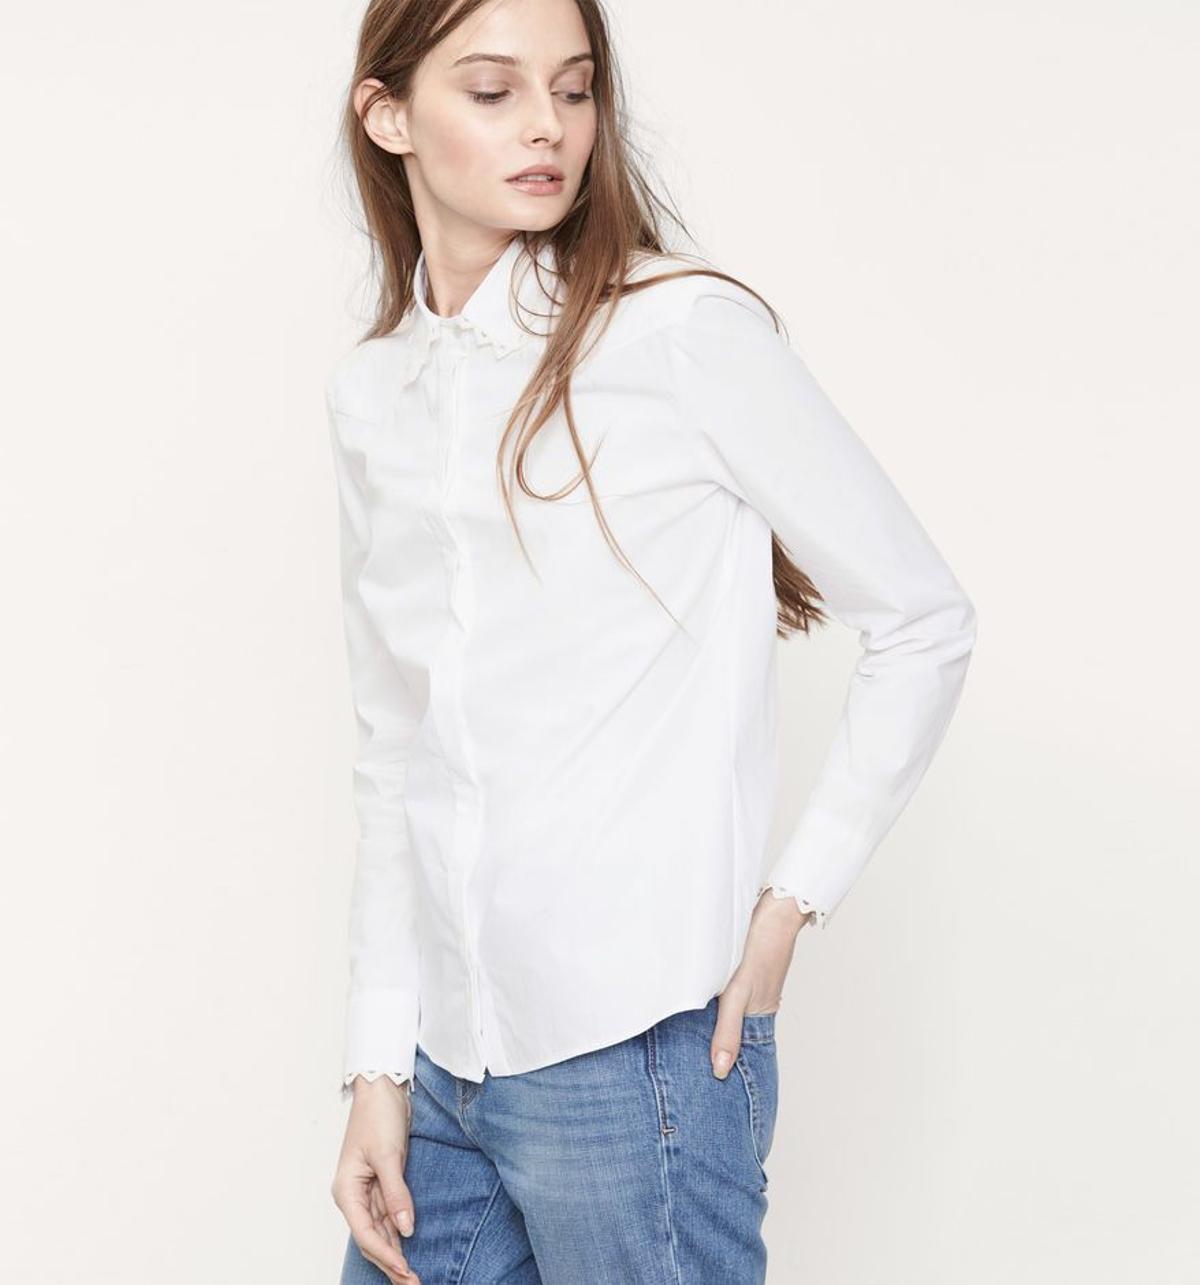 Básicos del armario perfecto: camisa blanca